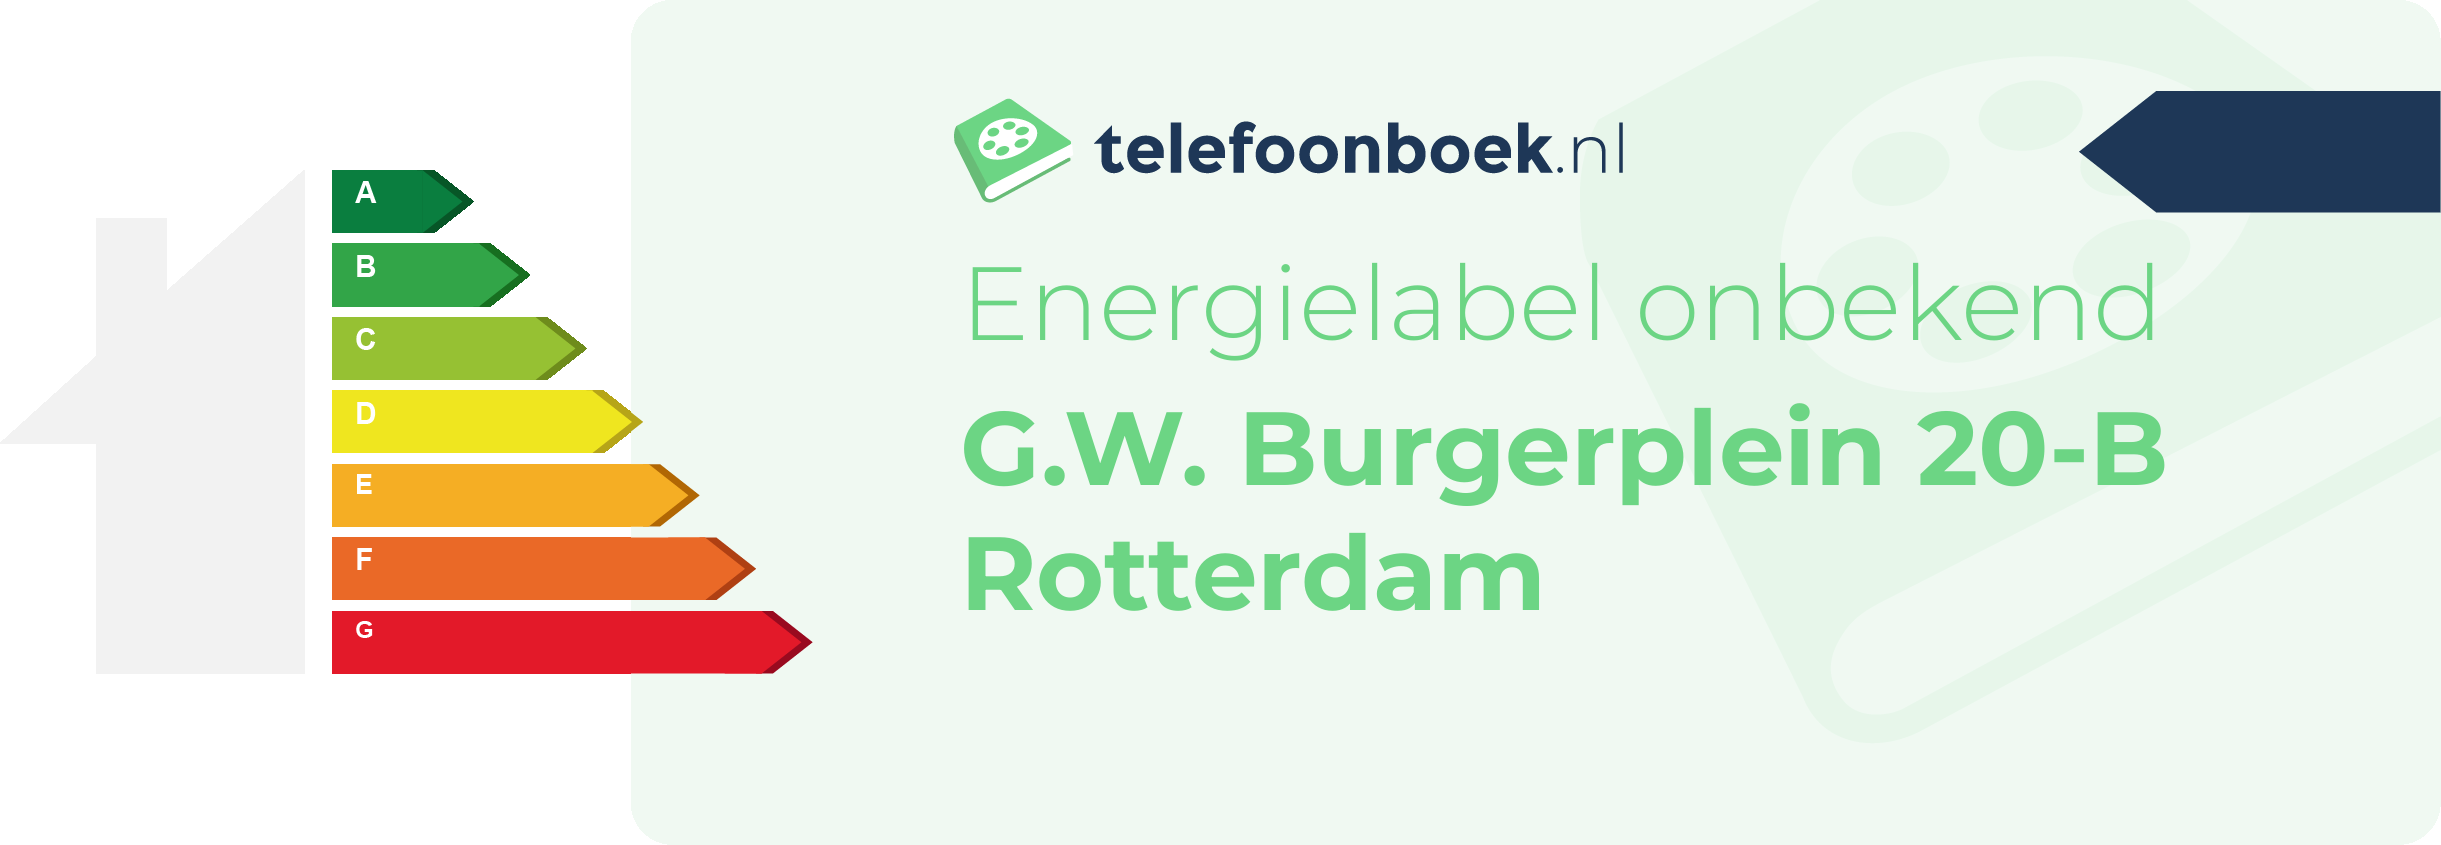 Energielabel G.W. Burgerplein 20-B Rotterdam